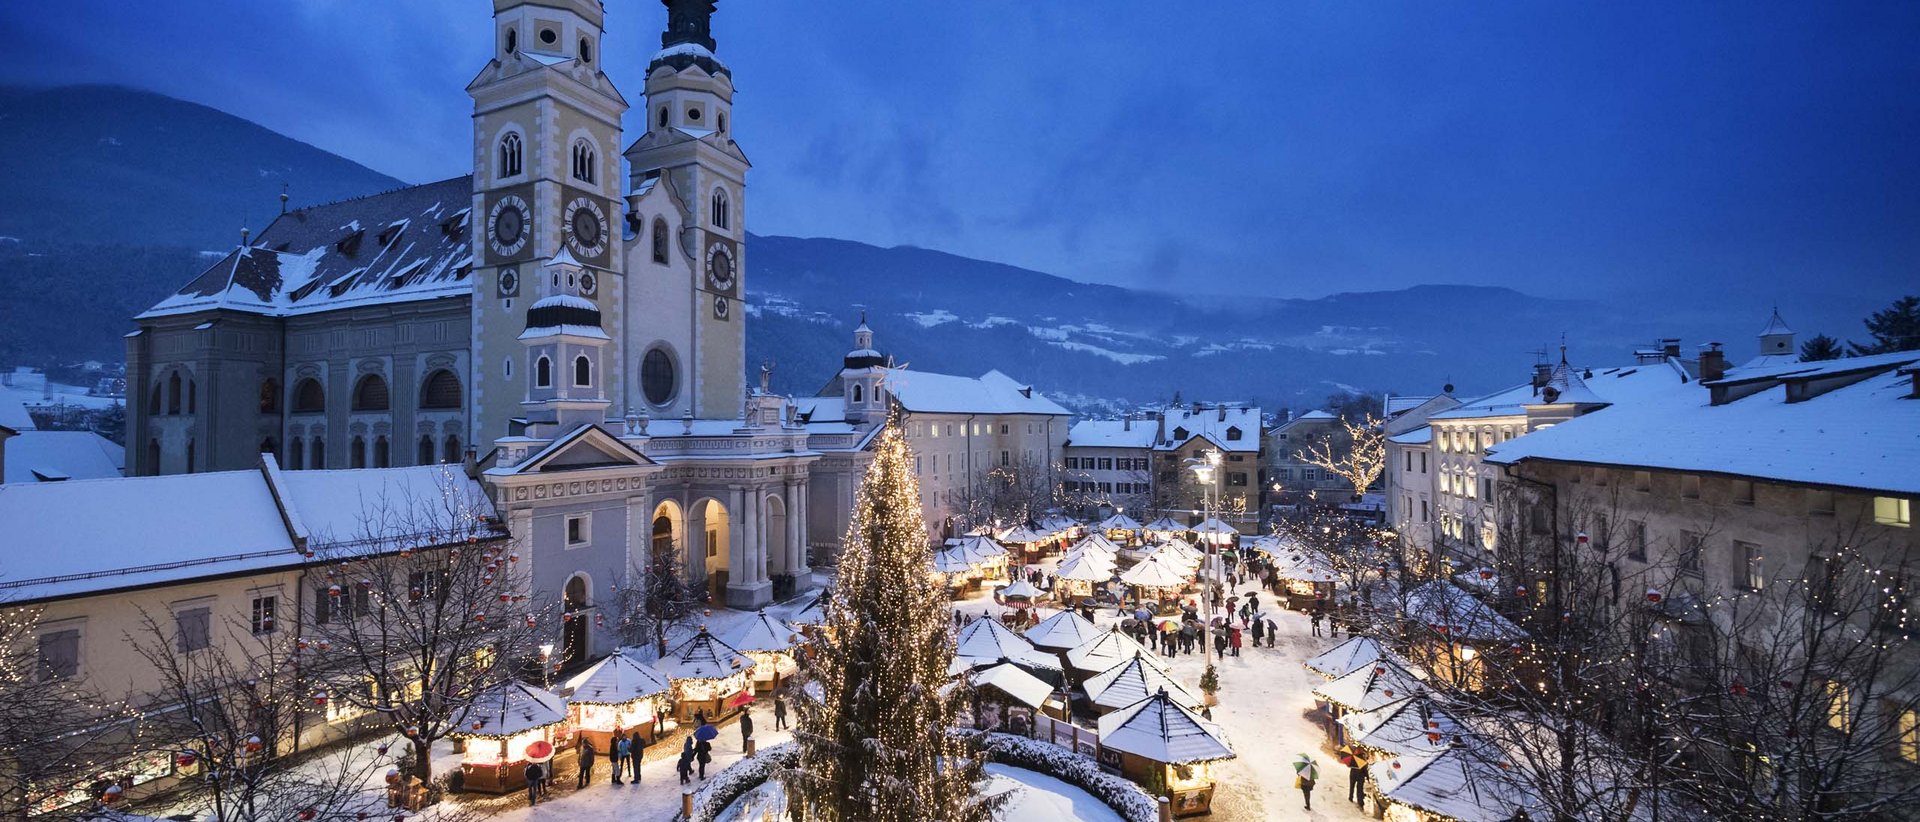 Mercatini di Natale di Bressanone: festa per tutti i sensi